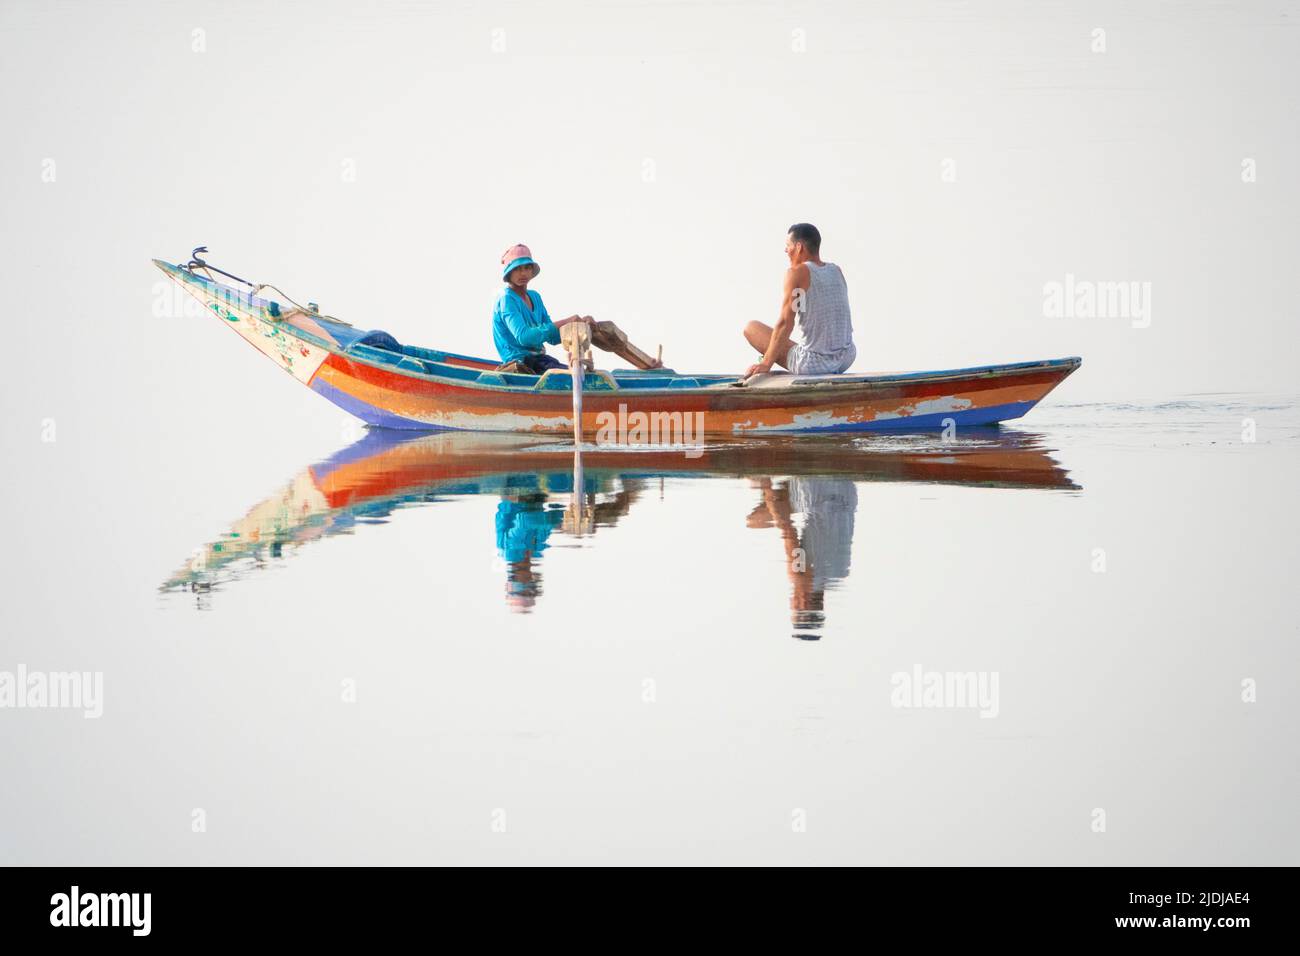 Deux jeunes hommes, l'un aviron et l'autre sur téléphone portable dans un bateau en bois peint de couleurs vives parfaitement reflété dans l'eau de surface du miroir Banque D'Images